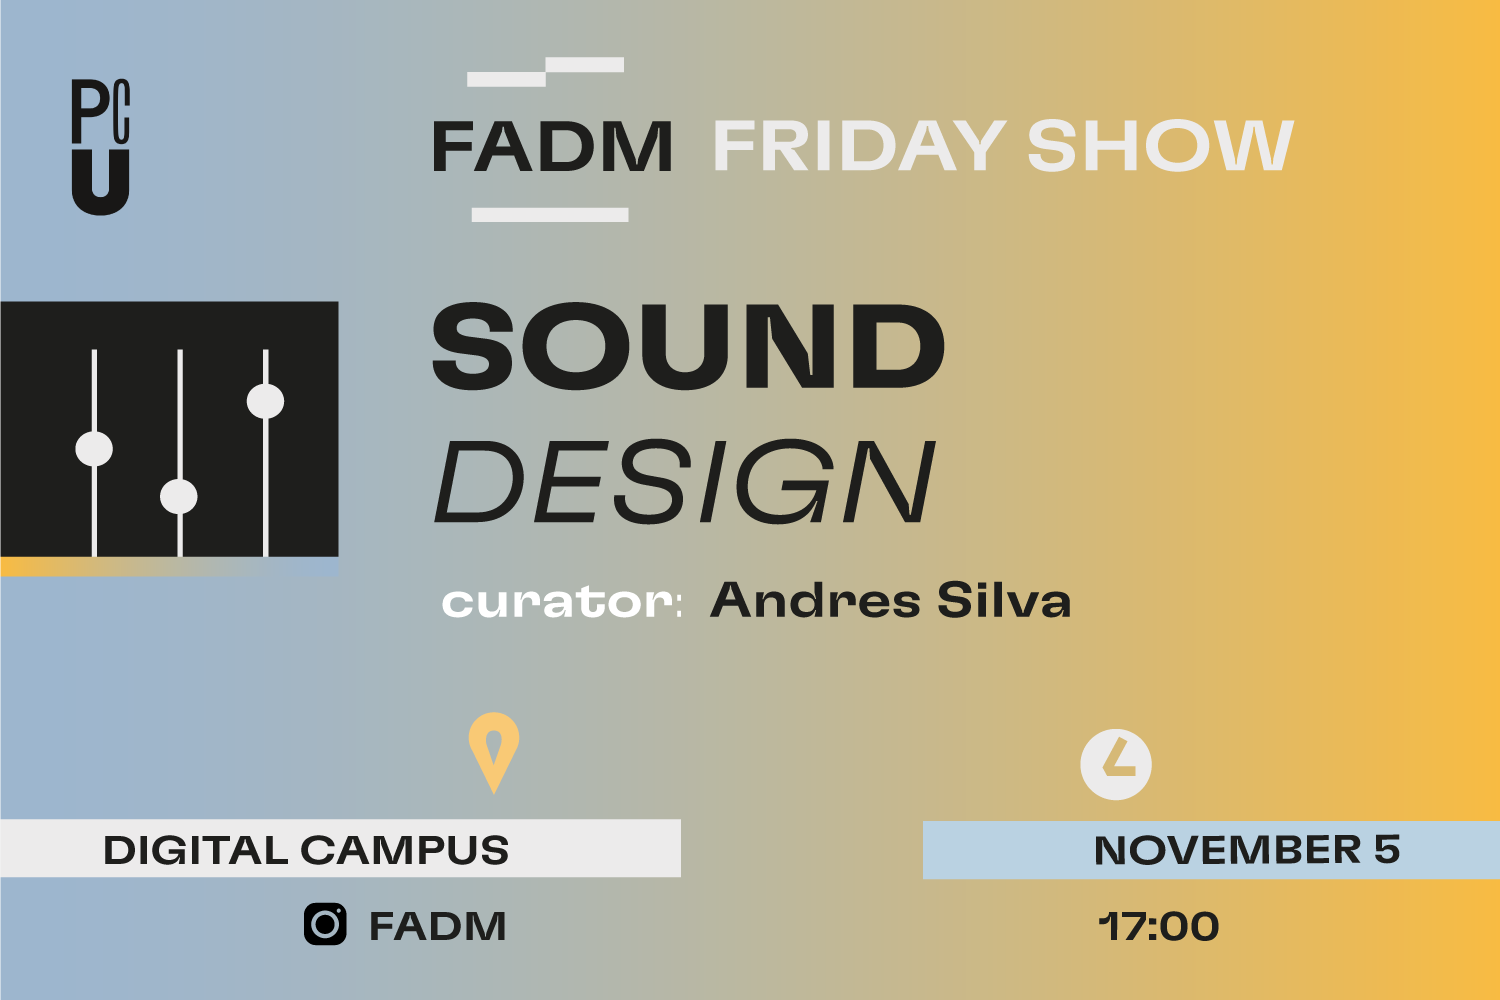 Friday Show Sound Design